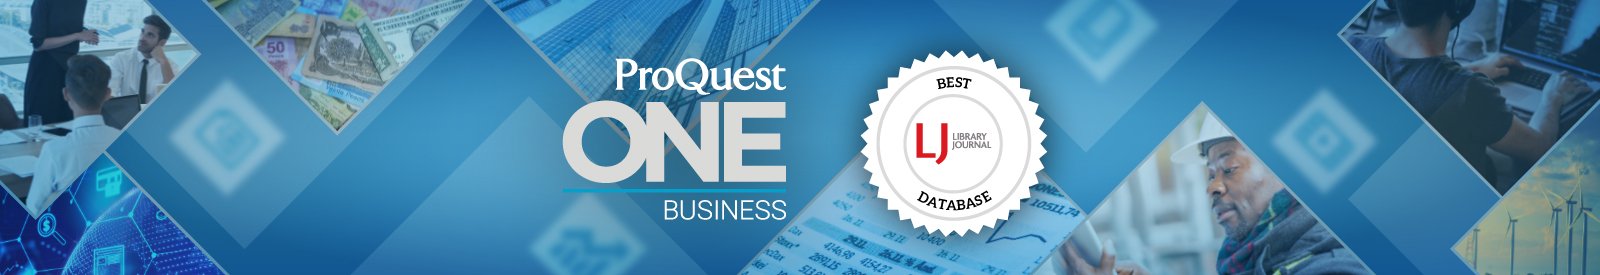 ProQuest一个业务:图书馆杂志最佳数据库获奖者